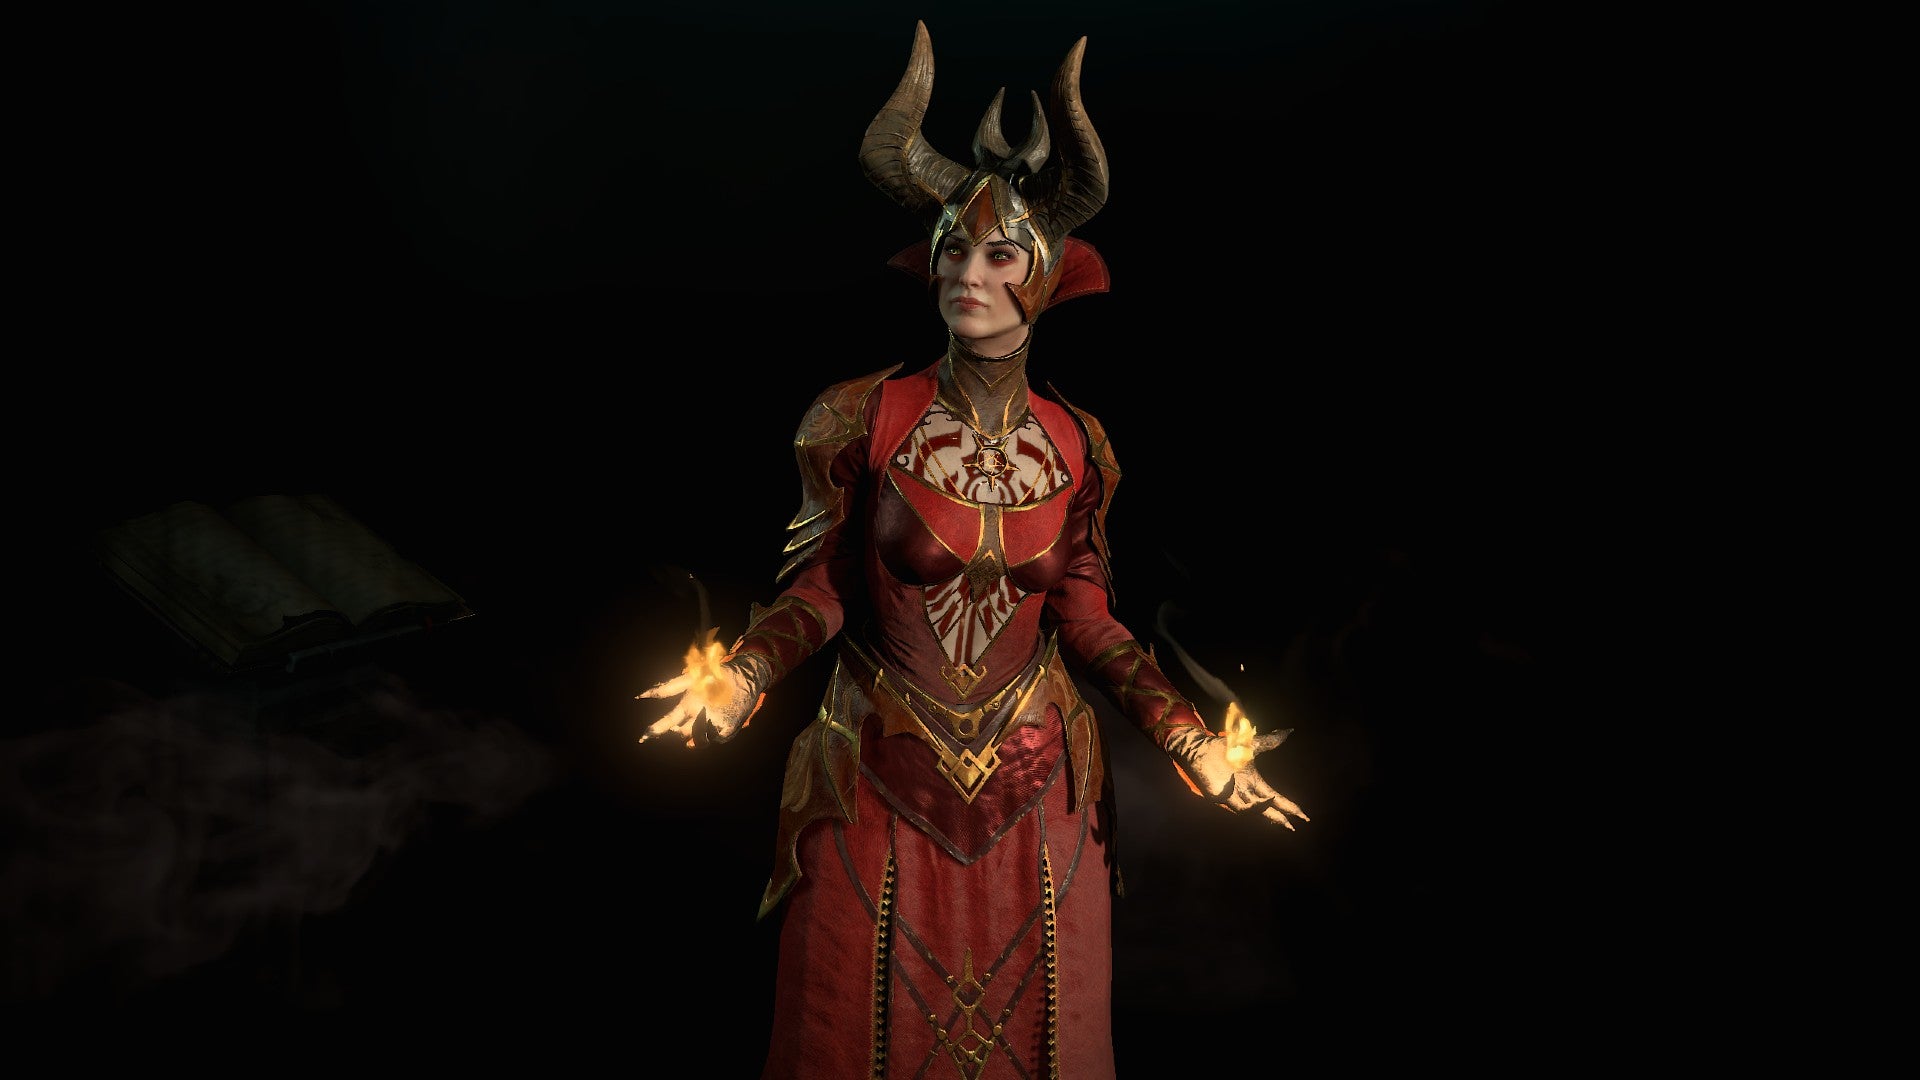 Изображение Diablo 4, Показывающее Колдуна В Красной Мантии И С Огнем В Руках На Темном Фоне.